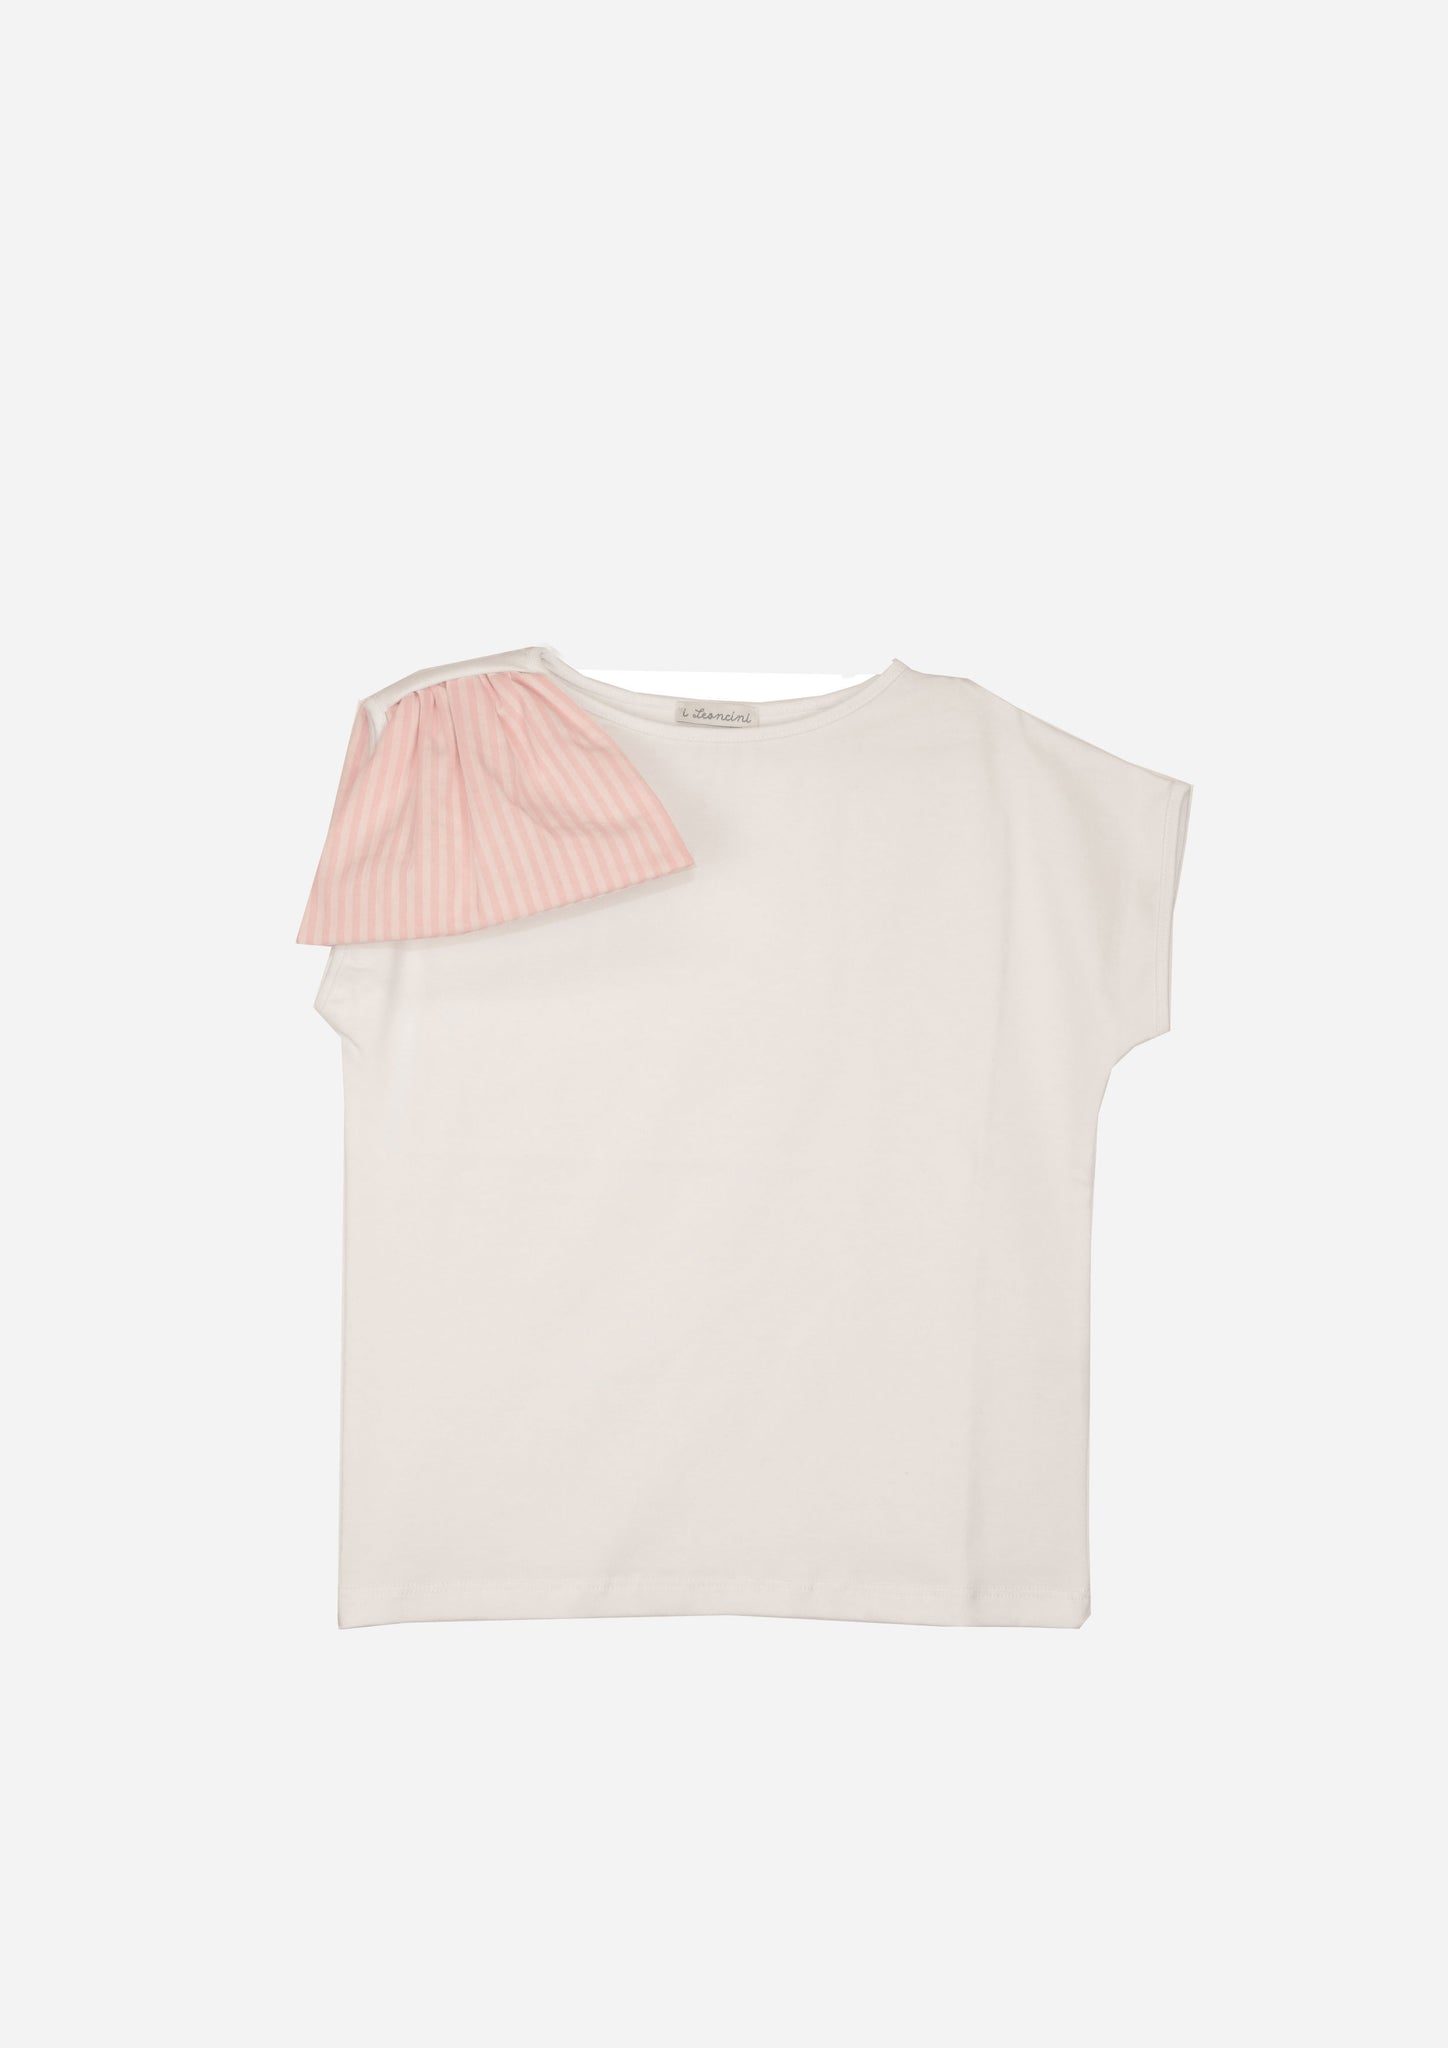 T-shirt SOLE Rosa, fiocco rigato rosa-OUTLET T-shirt, Camicie, Top e Canotte-I Leoncini Shop